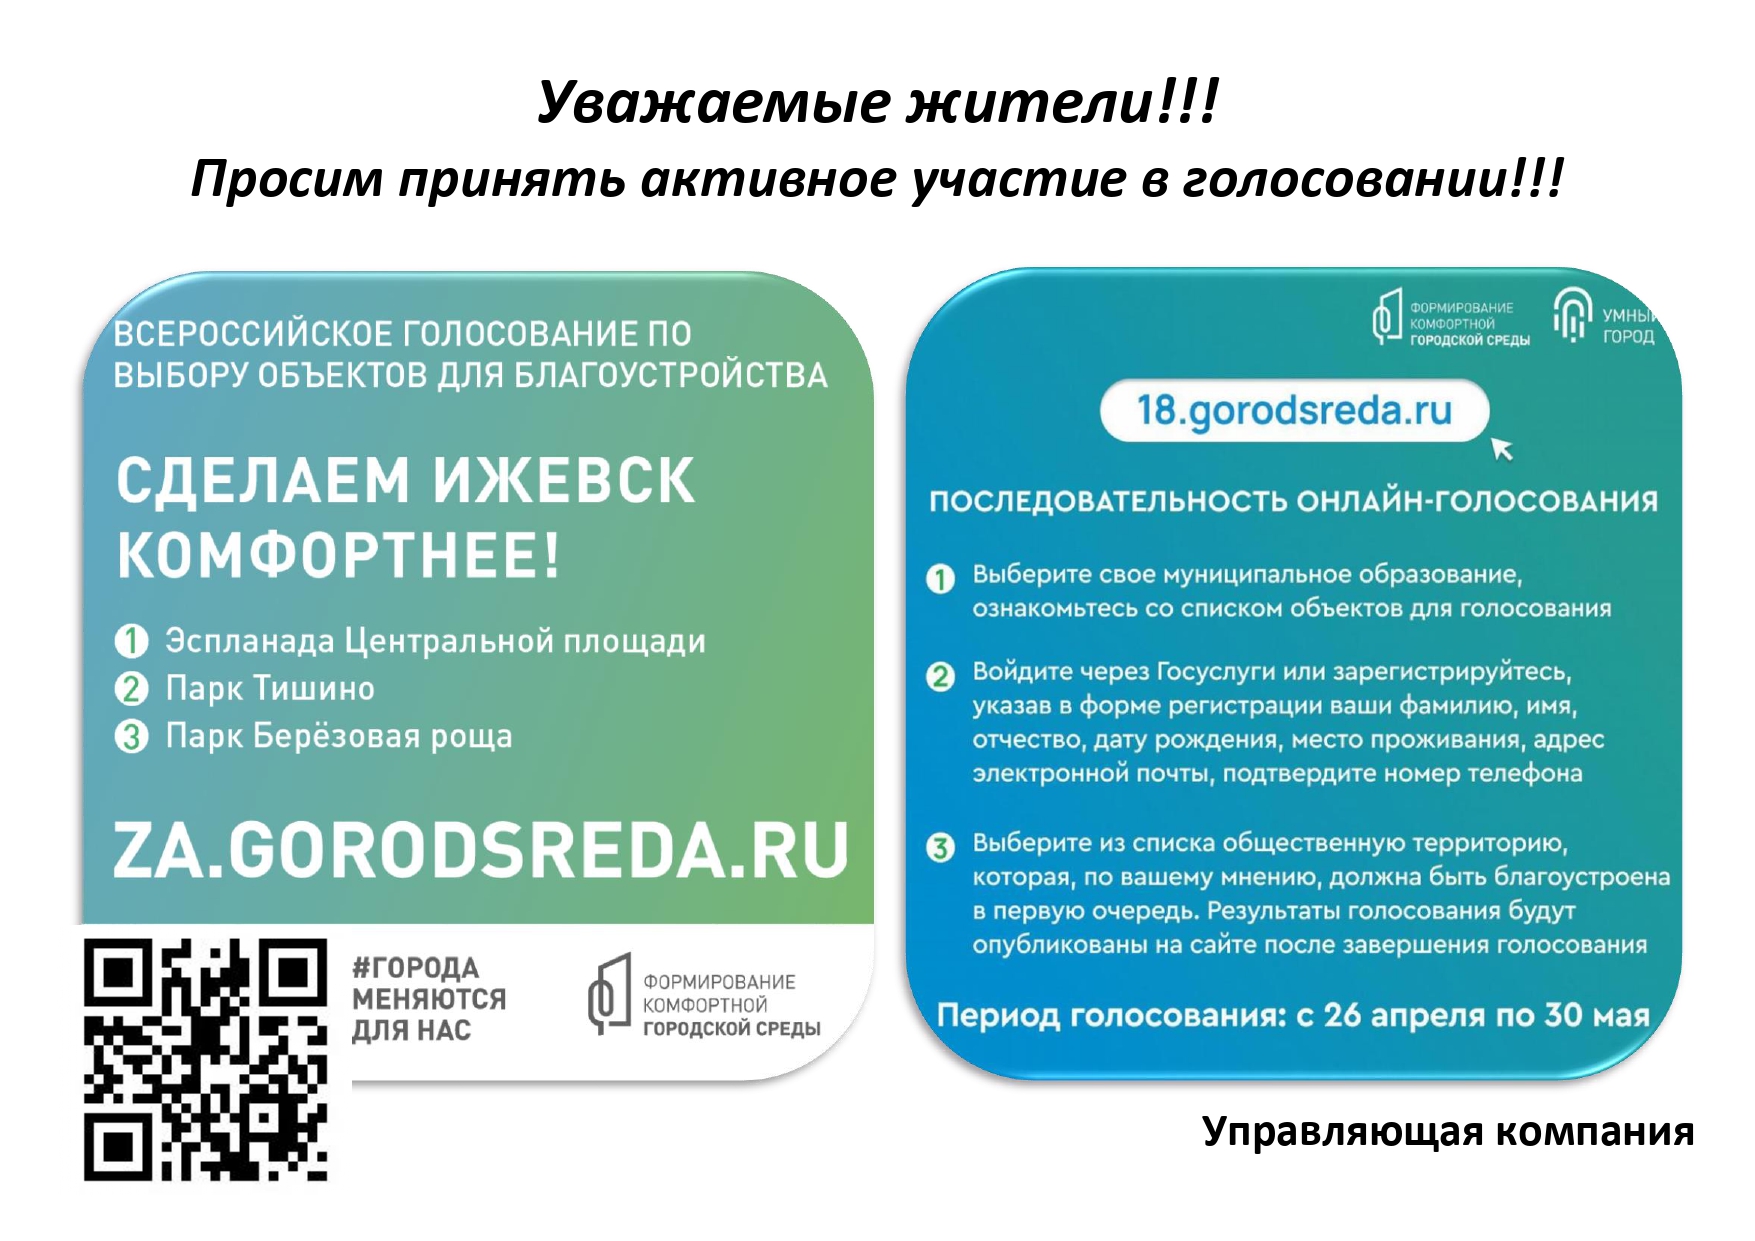 Примите участие в голосовании. 66 Городсреда ру проголосовать. 64городсреда.ру. Gorodsreda tatar ru голосование